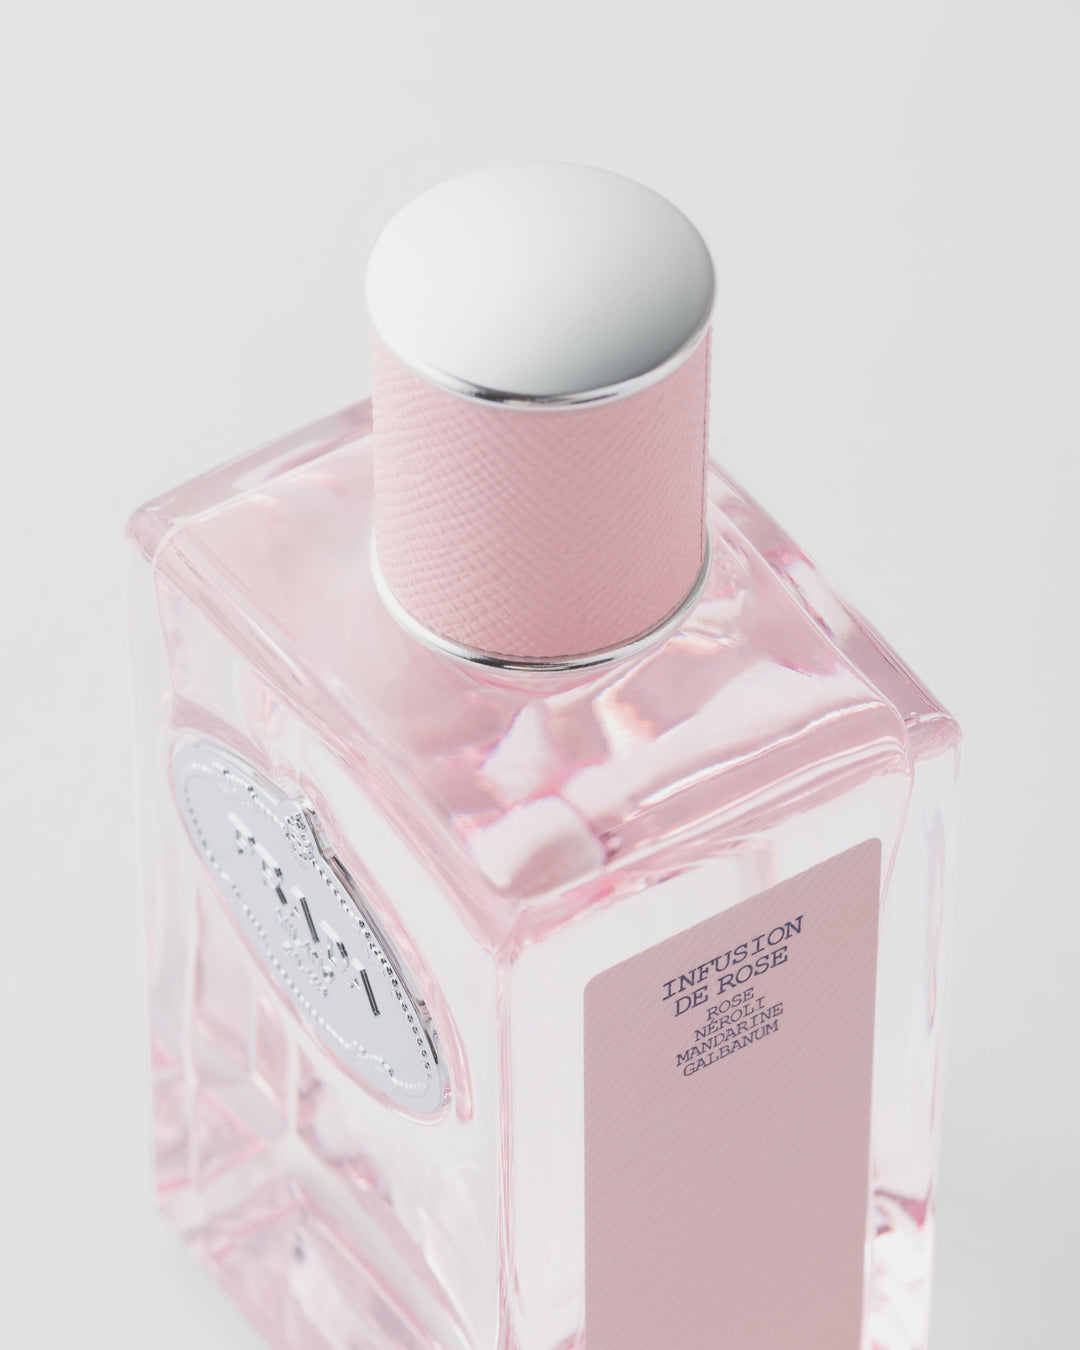 Nước Hoa PRADA Infusion de Rose Eau de Parfum #100 mL